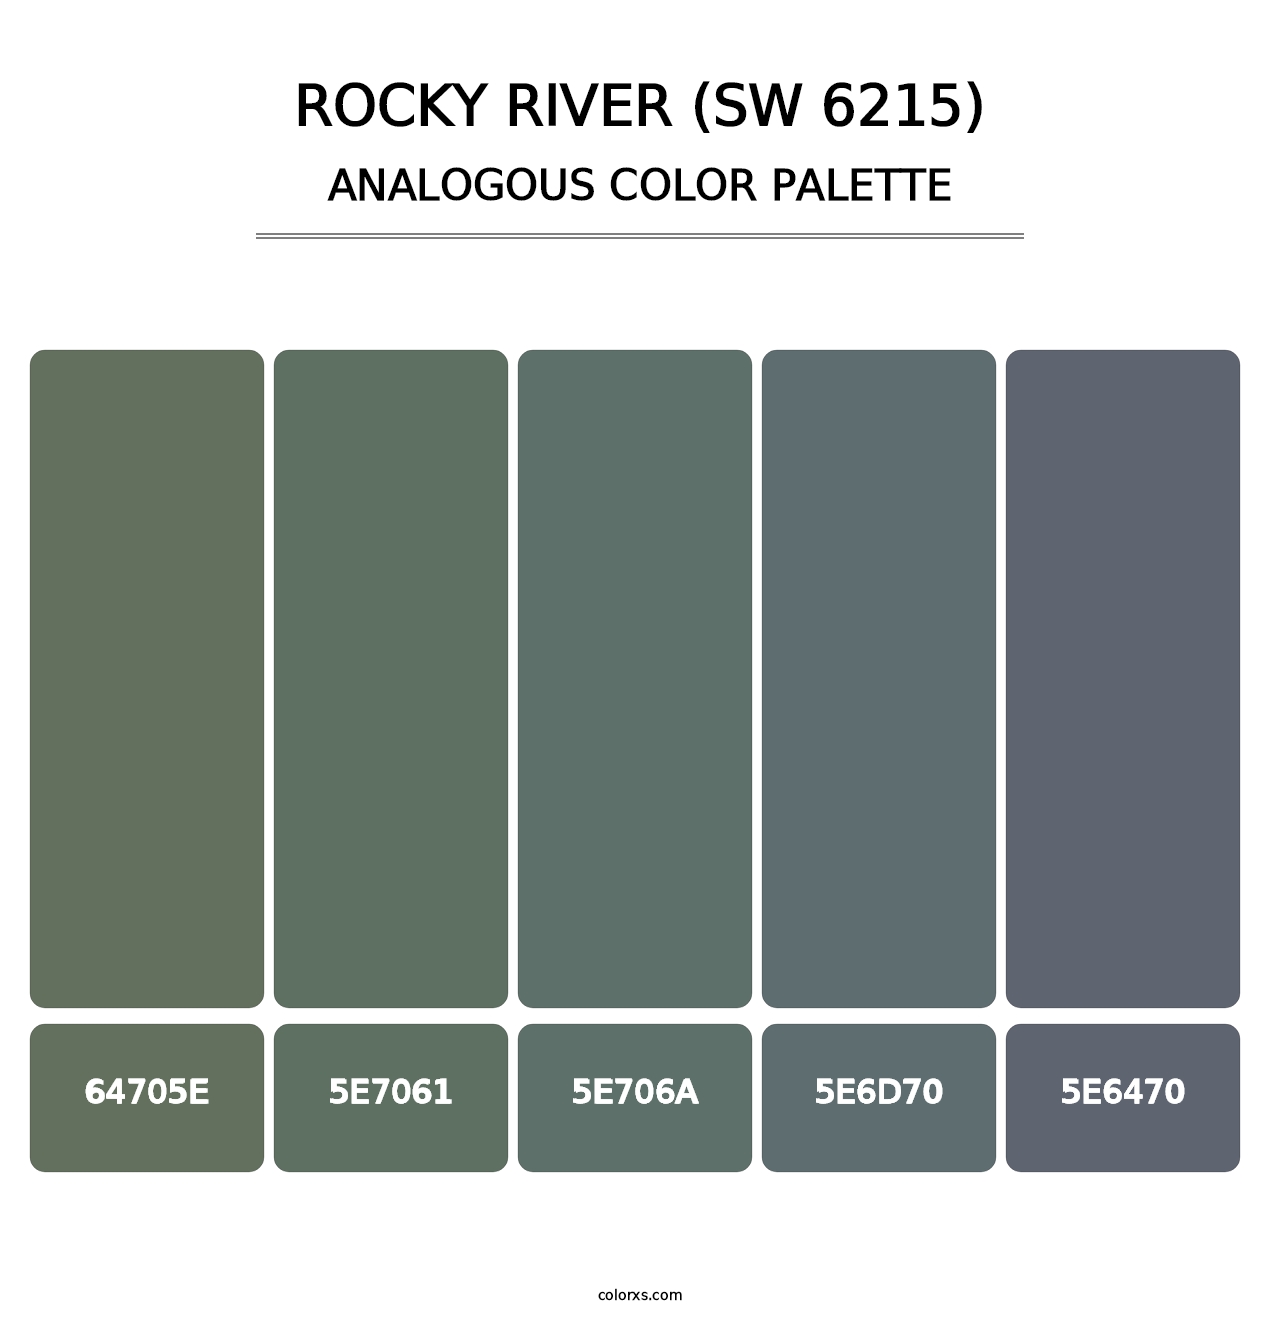 Rocky River (SW 6215) - Analogous Color Palette